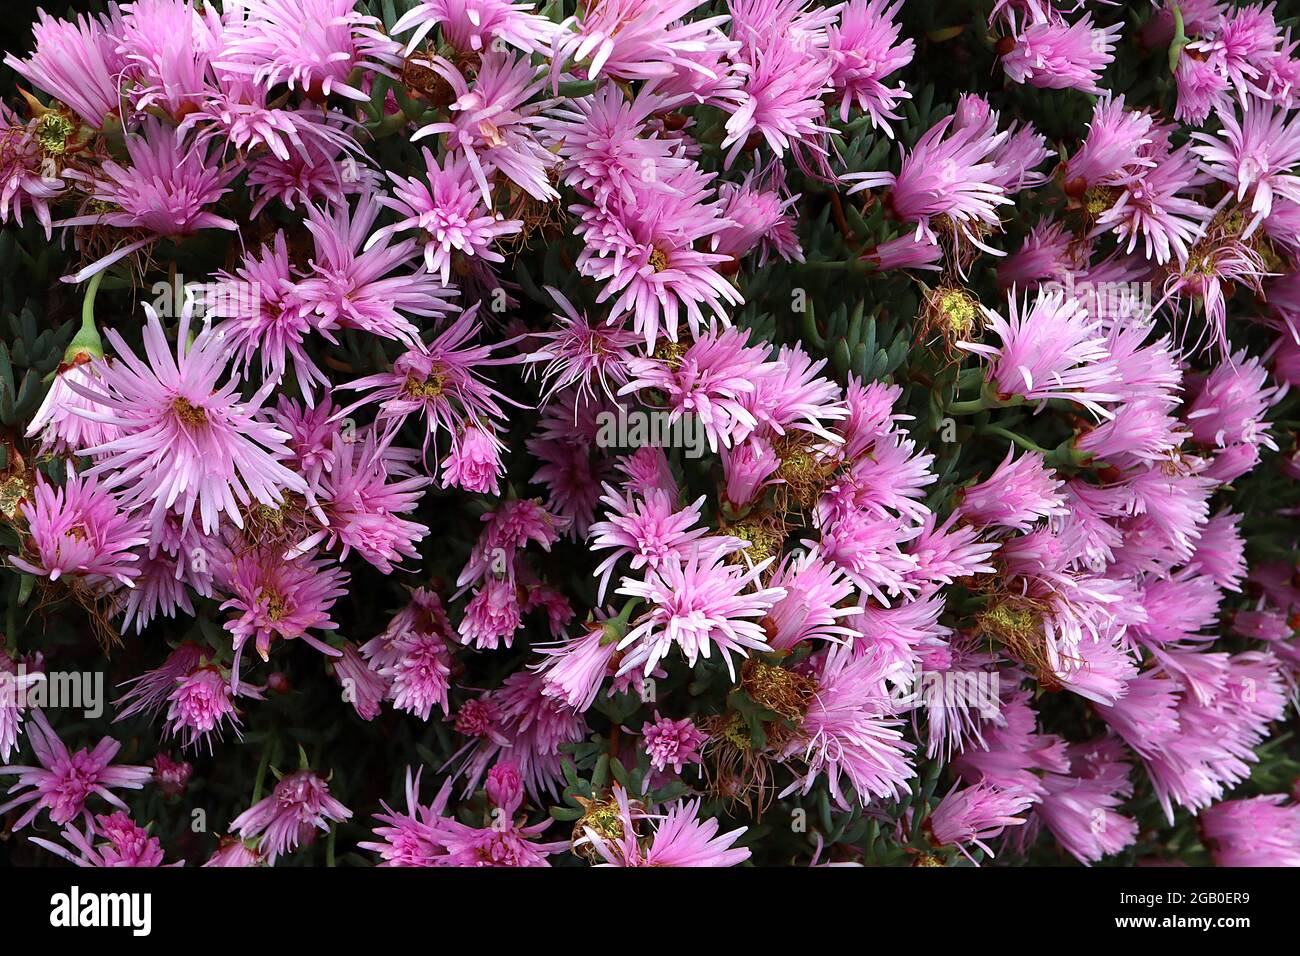 Delosperma 'Mesa Verde' Eispflanze Mesa Verde – rosafarbene  Gänseblümchen-ähnliche Blüten mit mehreren Blütenblättern und kurzen  fleischigen aufrechten Blättern, Juni, England, Großbritannien  Stockfotografie - Alamy